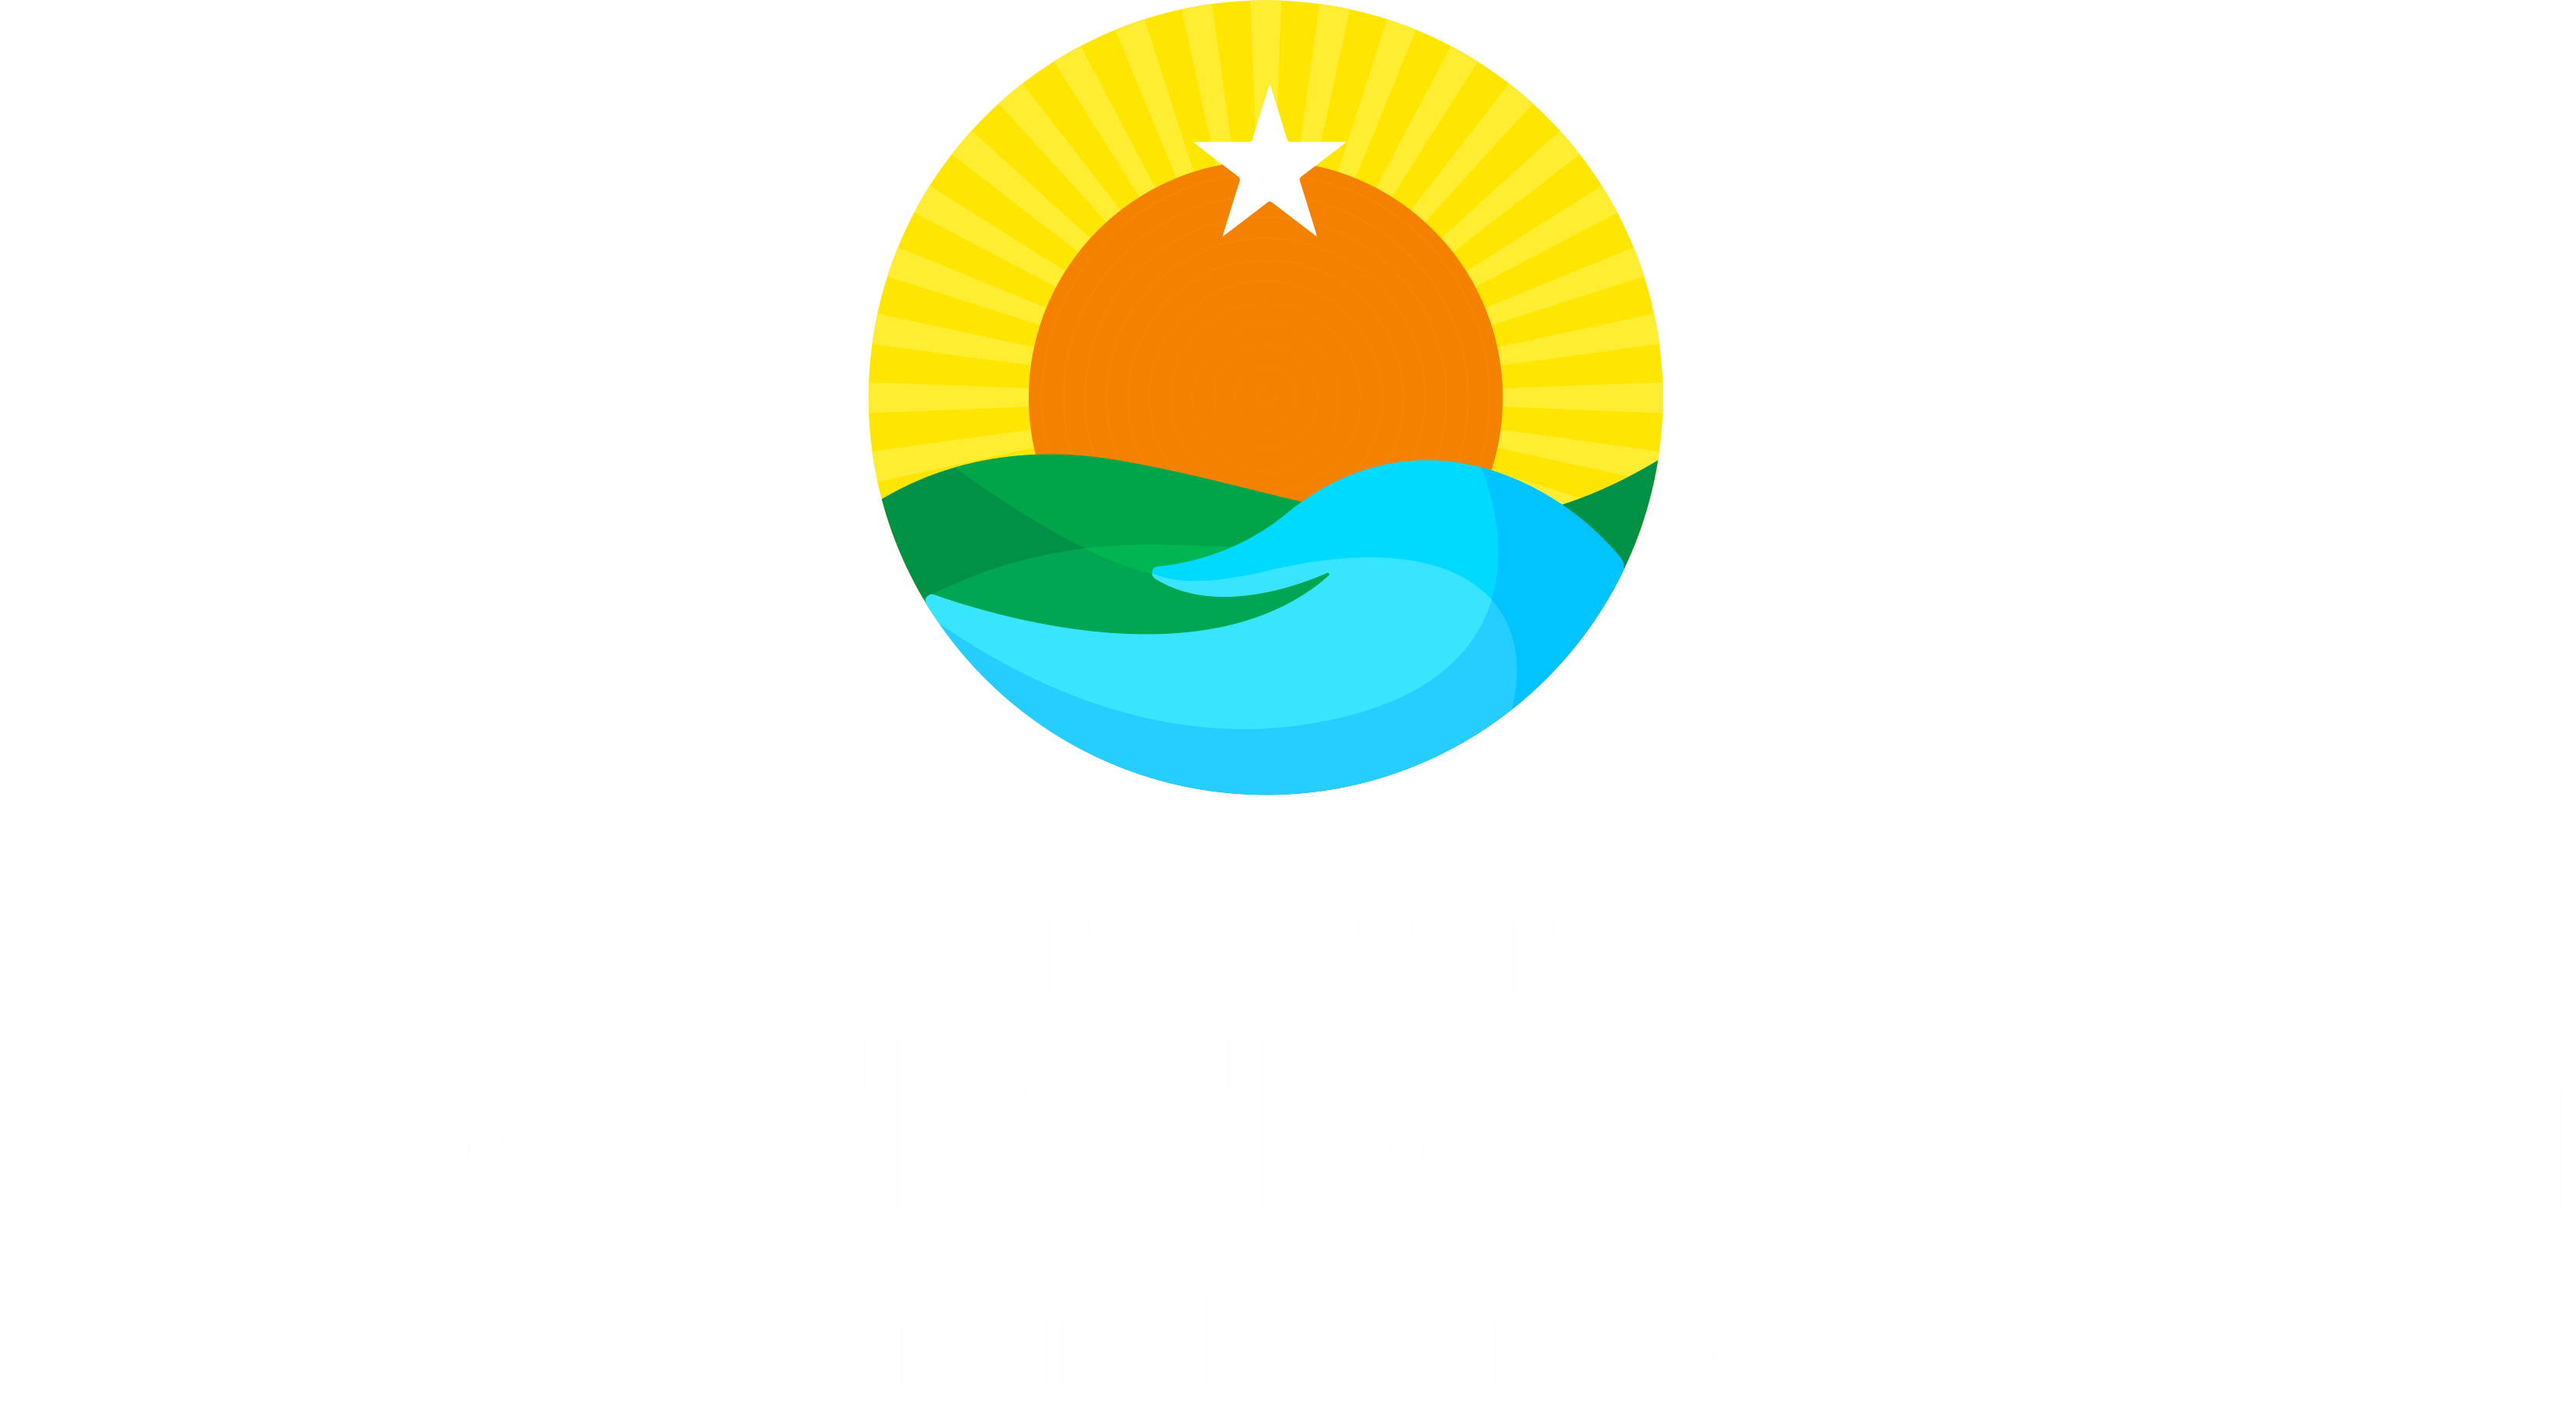 Logotipo Prefeitura